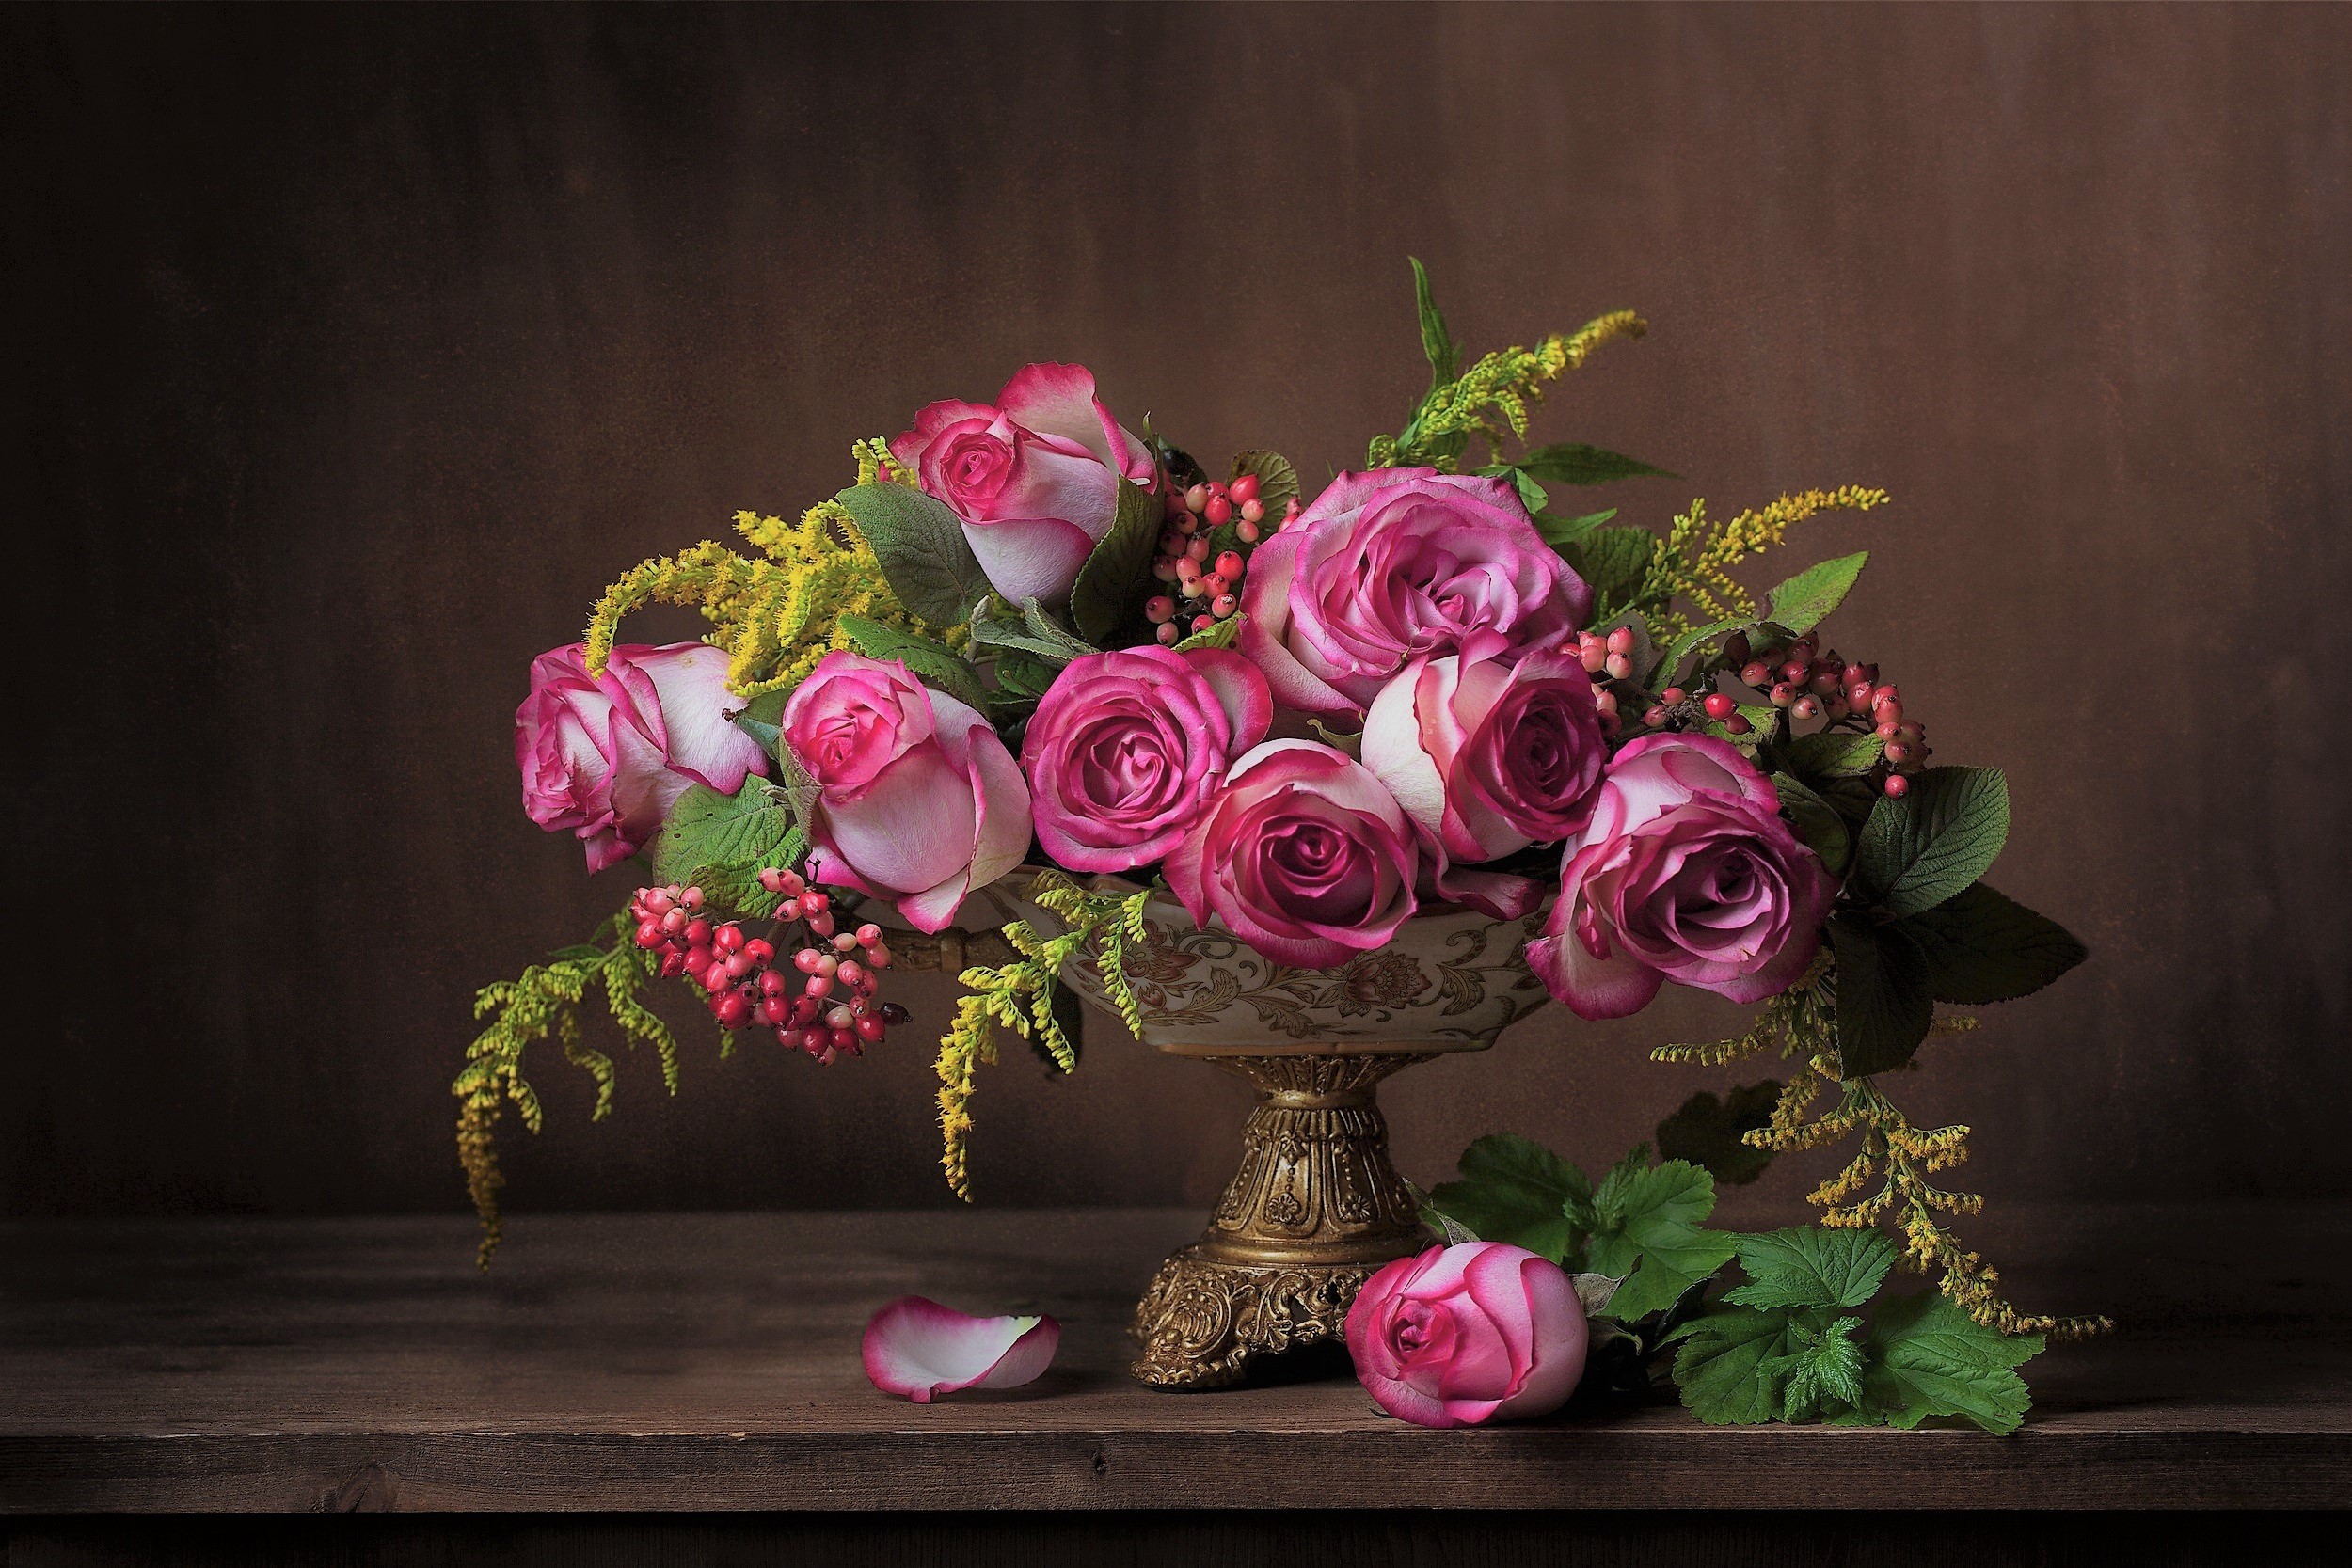 photography, still life, bowl, flower, leaf, pink flower, rose, vase